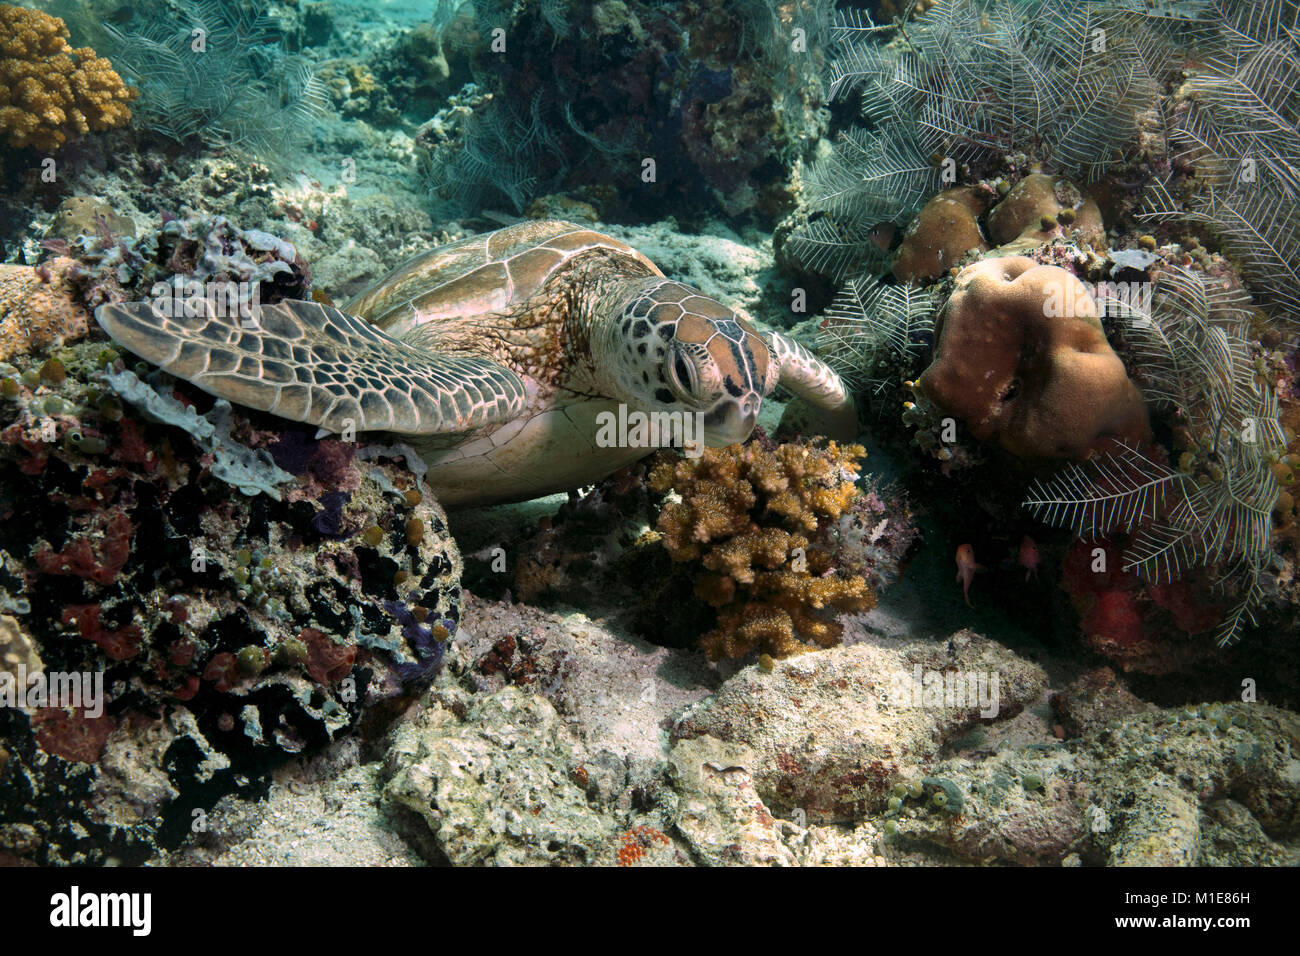 Green sea turtle (Chelonia mydas) in the Celebes sea. Sipadan Island, Malaysia Stock Photo